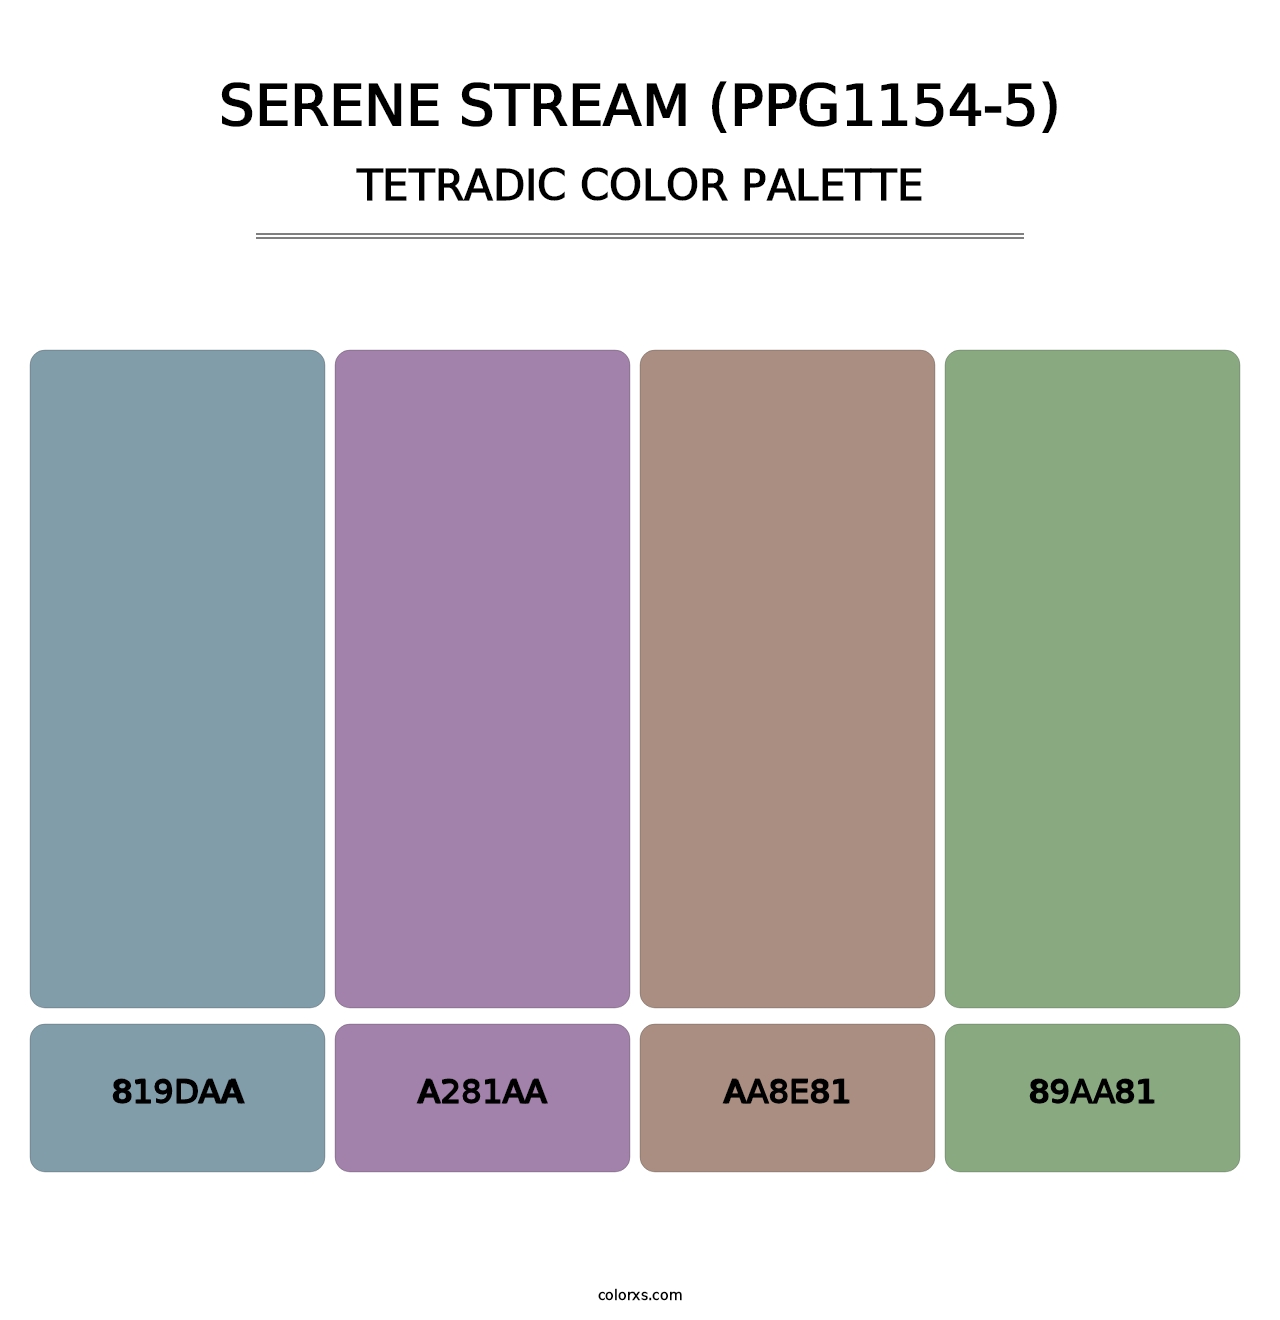 Serene Stream (PPG1154-5) - Tetradic Color Palette